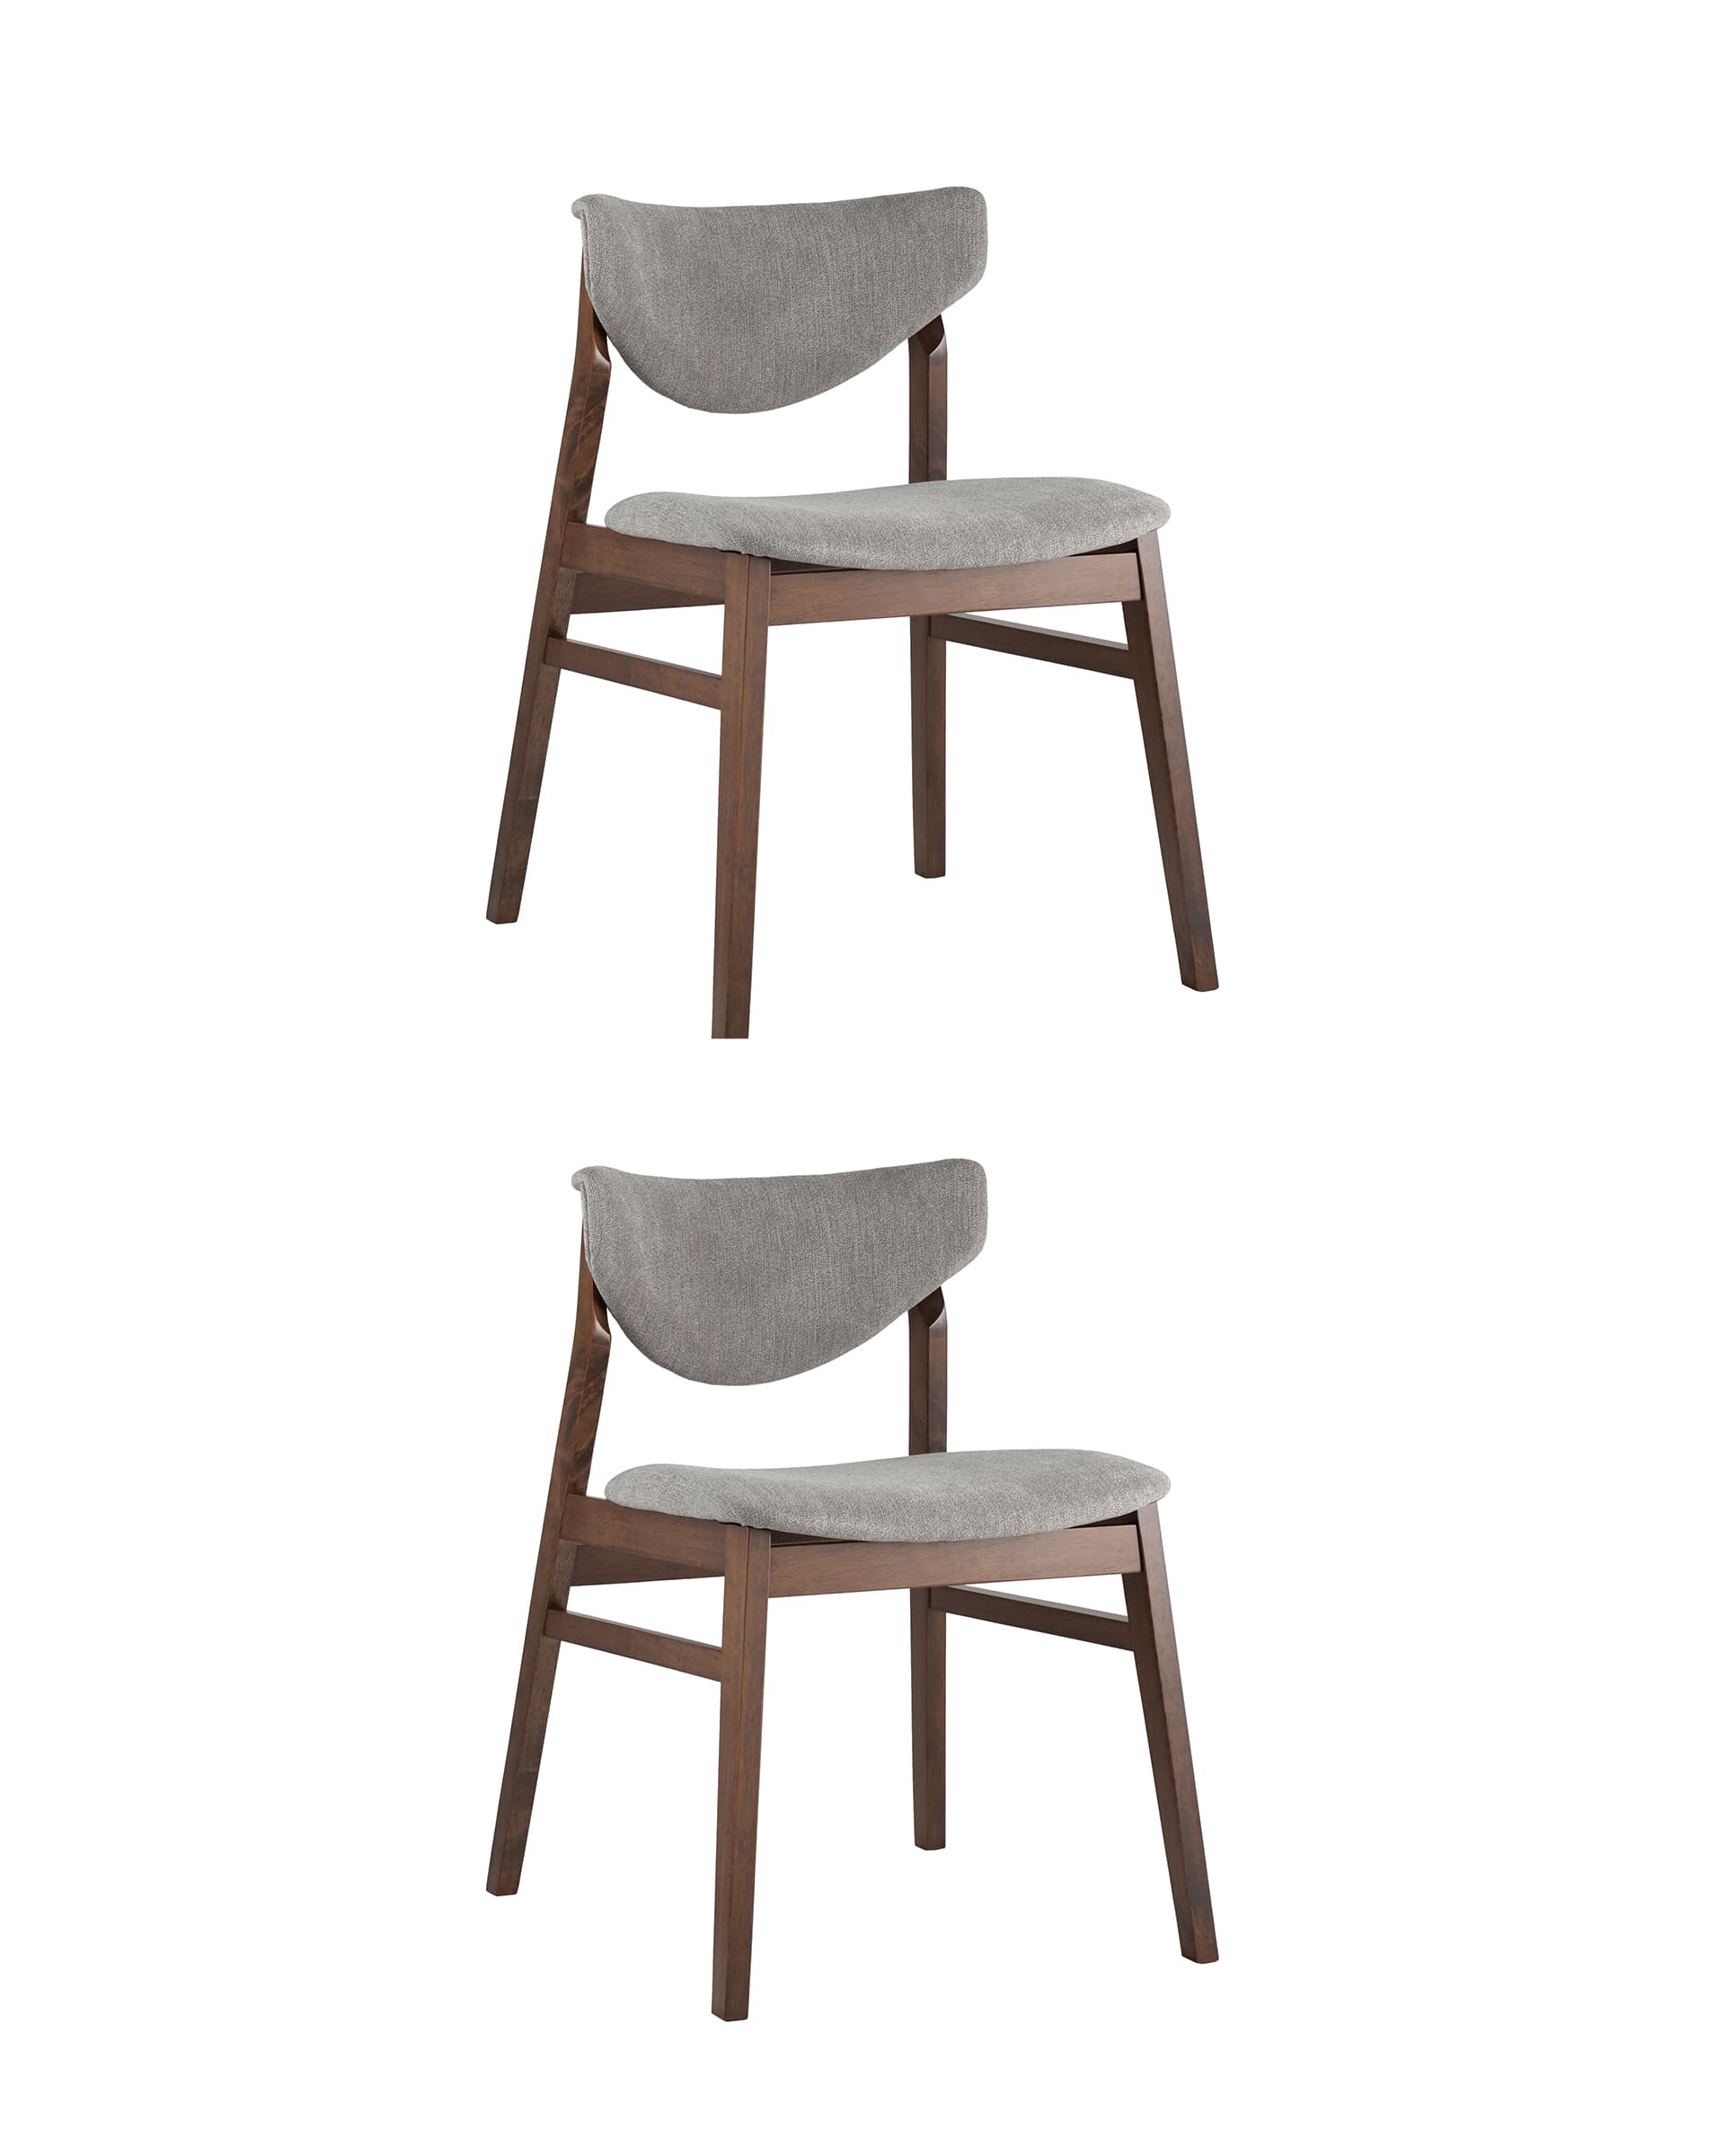 Комплект из двух стульев Ragnar мягкое тканевое серое сиденье деревянный каркас из массива гевеи